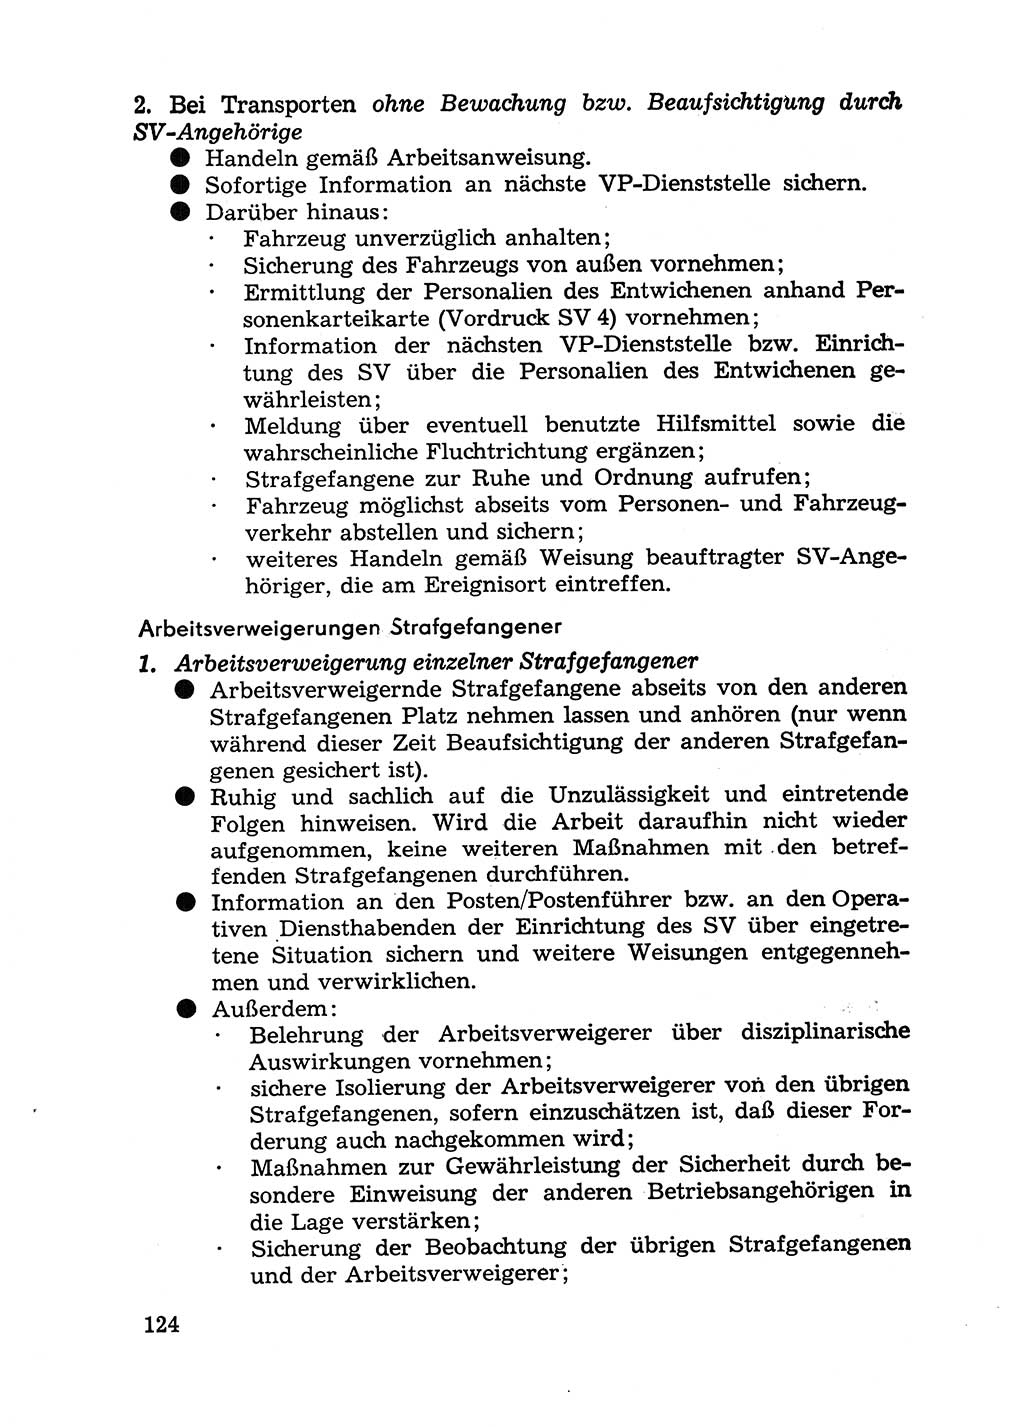 Handbuch für Betriebsangehörige, Abteilung Strafvollzug (SV) [Ministerium des Innern (MdI) Deutsche Demokratische Republik (DDR)] 1981, Seite 124 (Hb. BA Abt. SV MdI DDR 1981, S. 124)